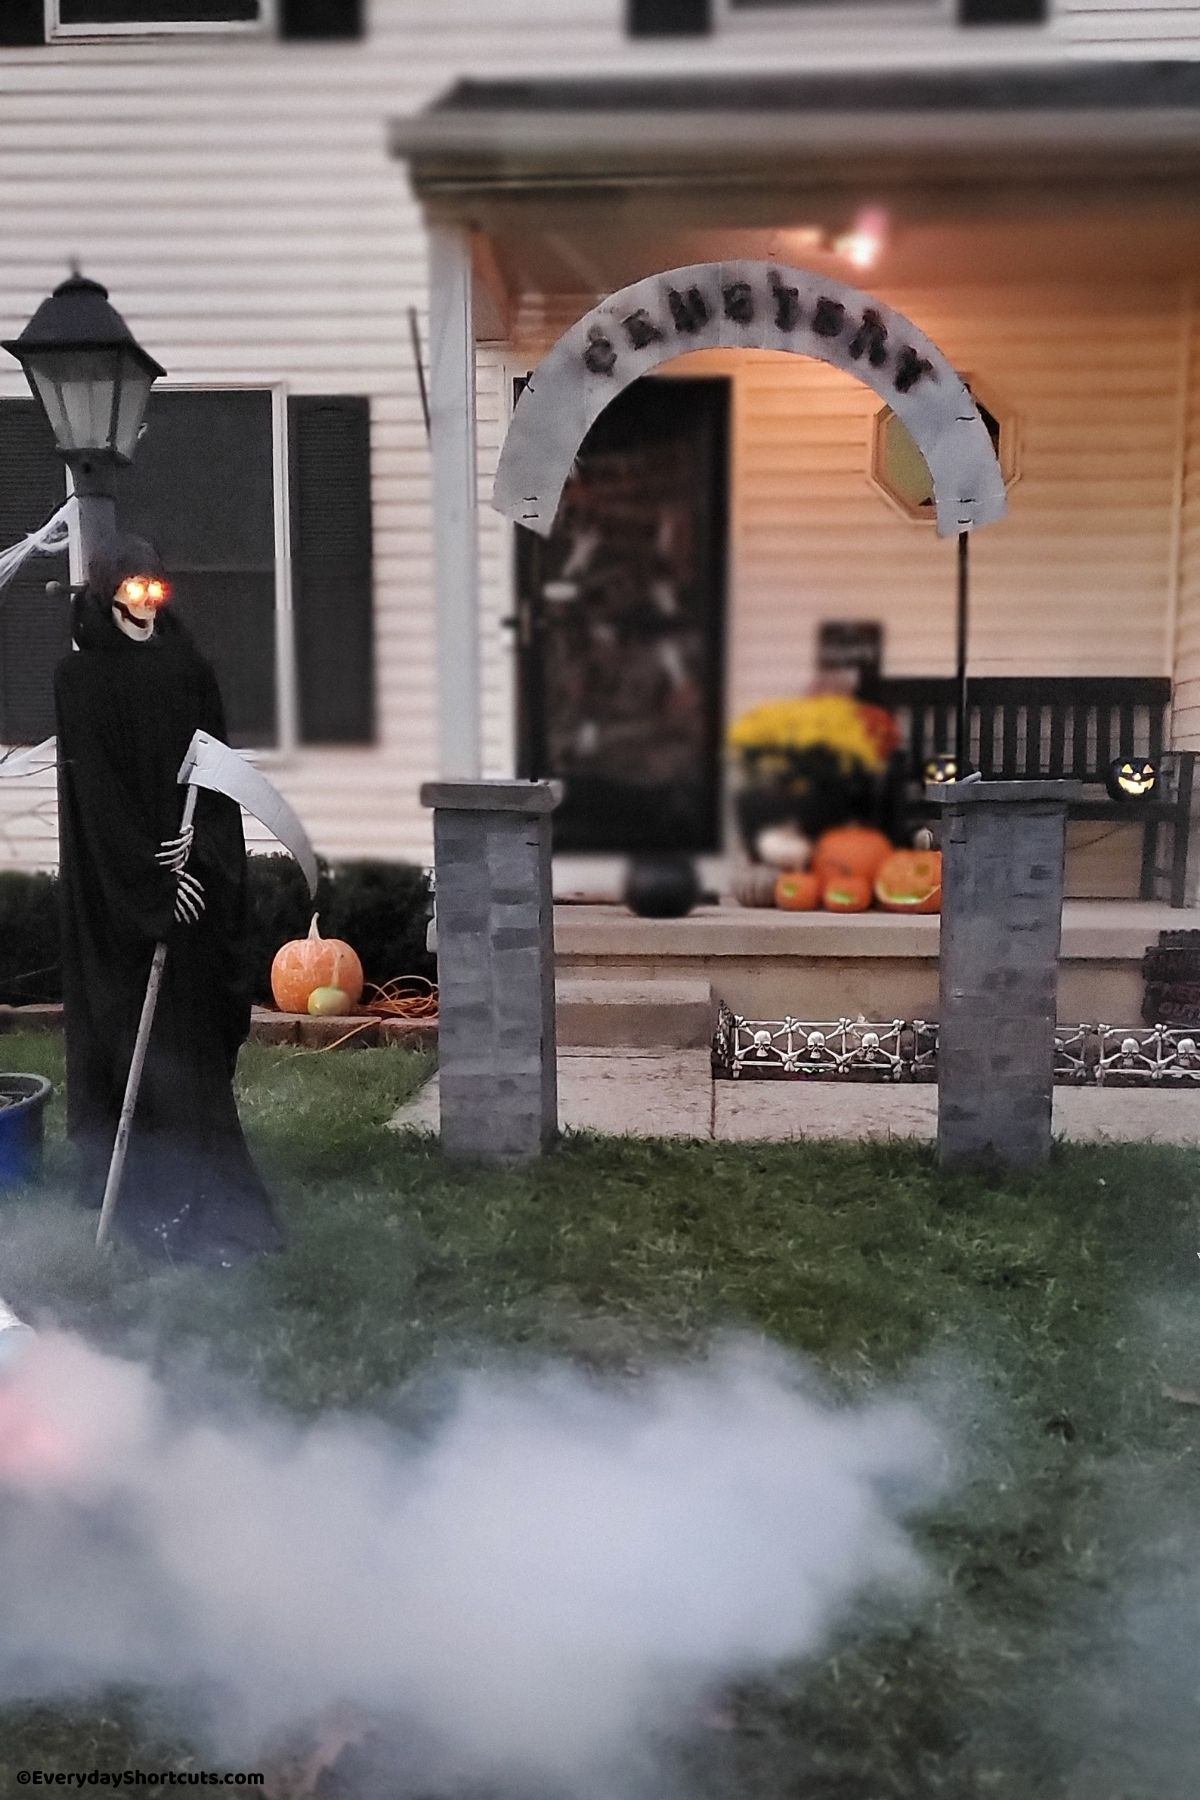 diy grim reaper with glowing eyes in haunted yard cemetery